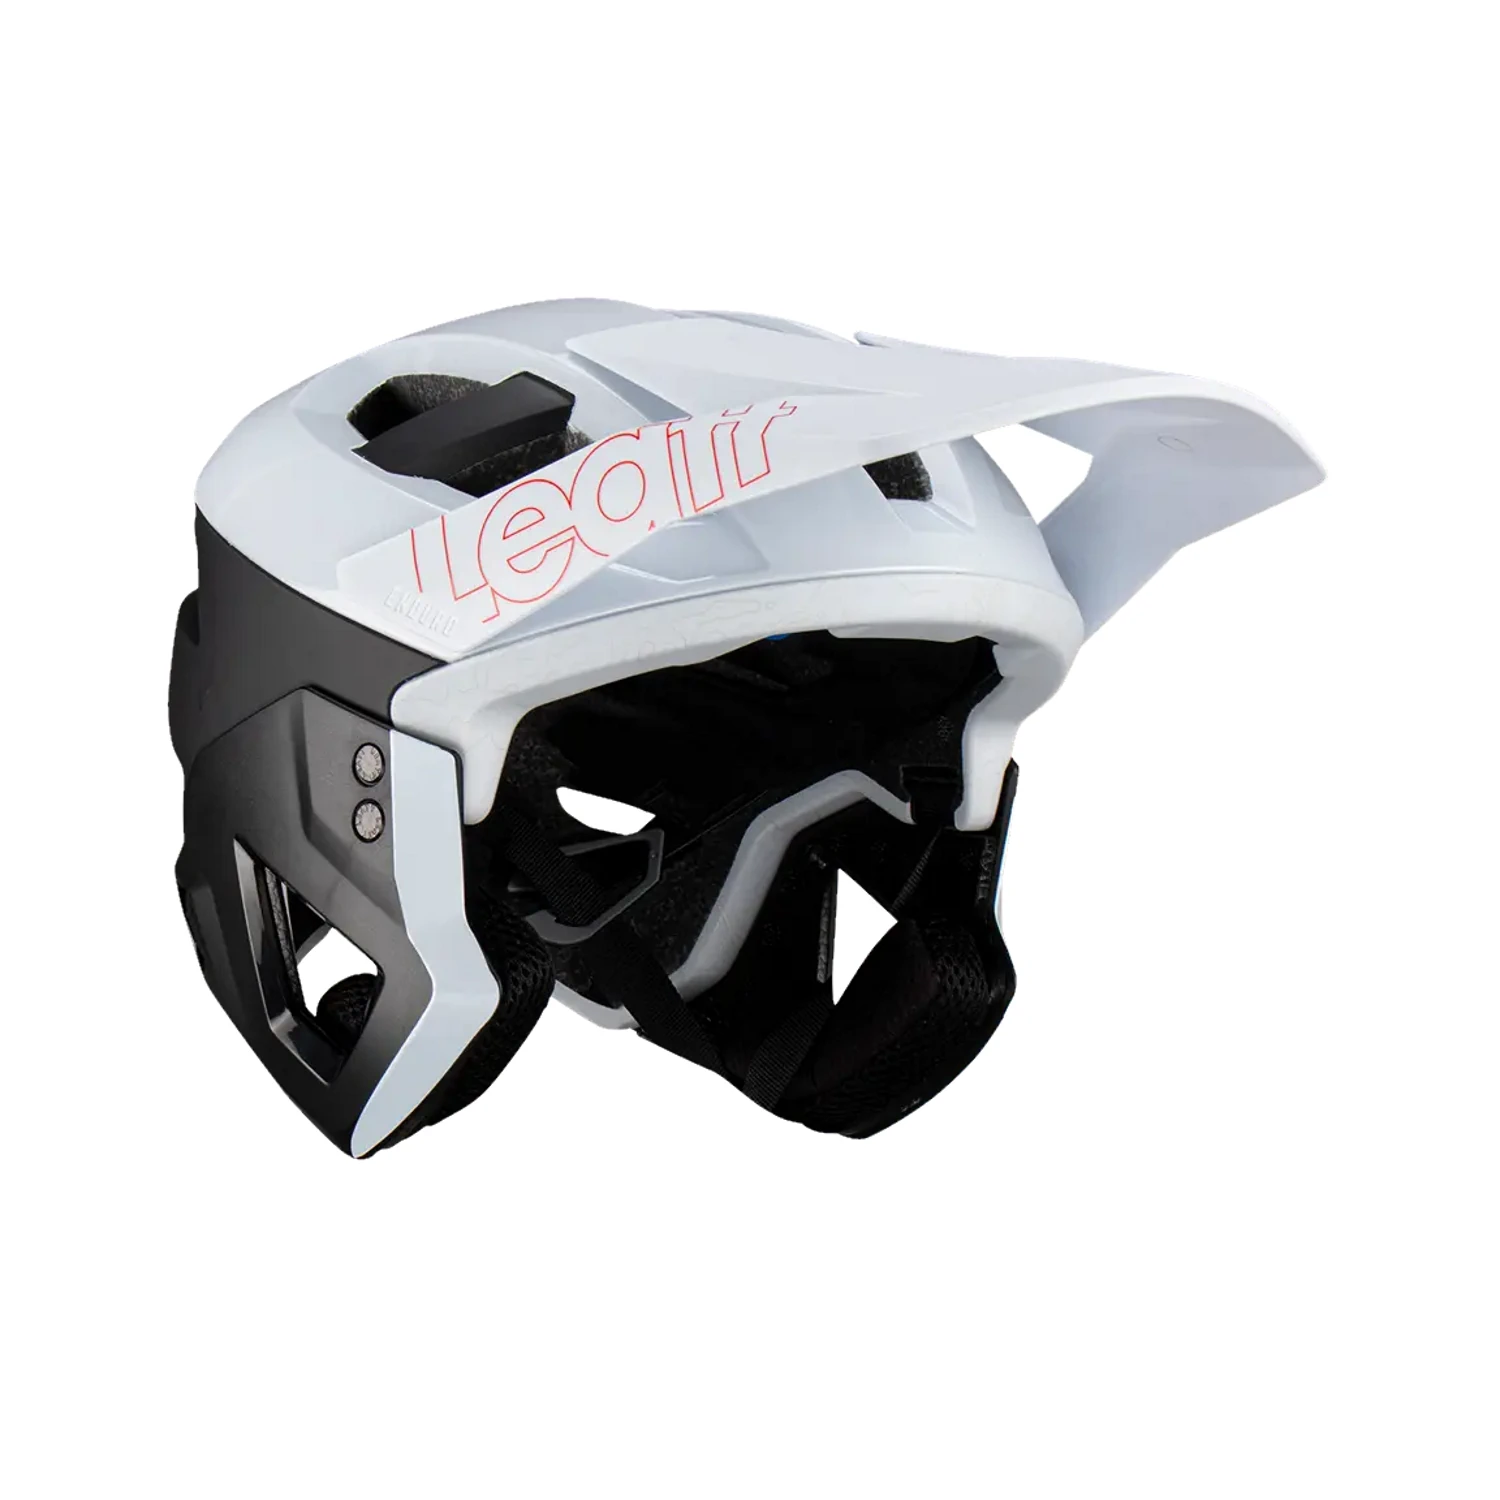 Biały kask rowerowy Leatt z daszkiem, bez ochraniacza szczęki, wyraźne logo